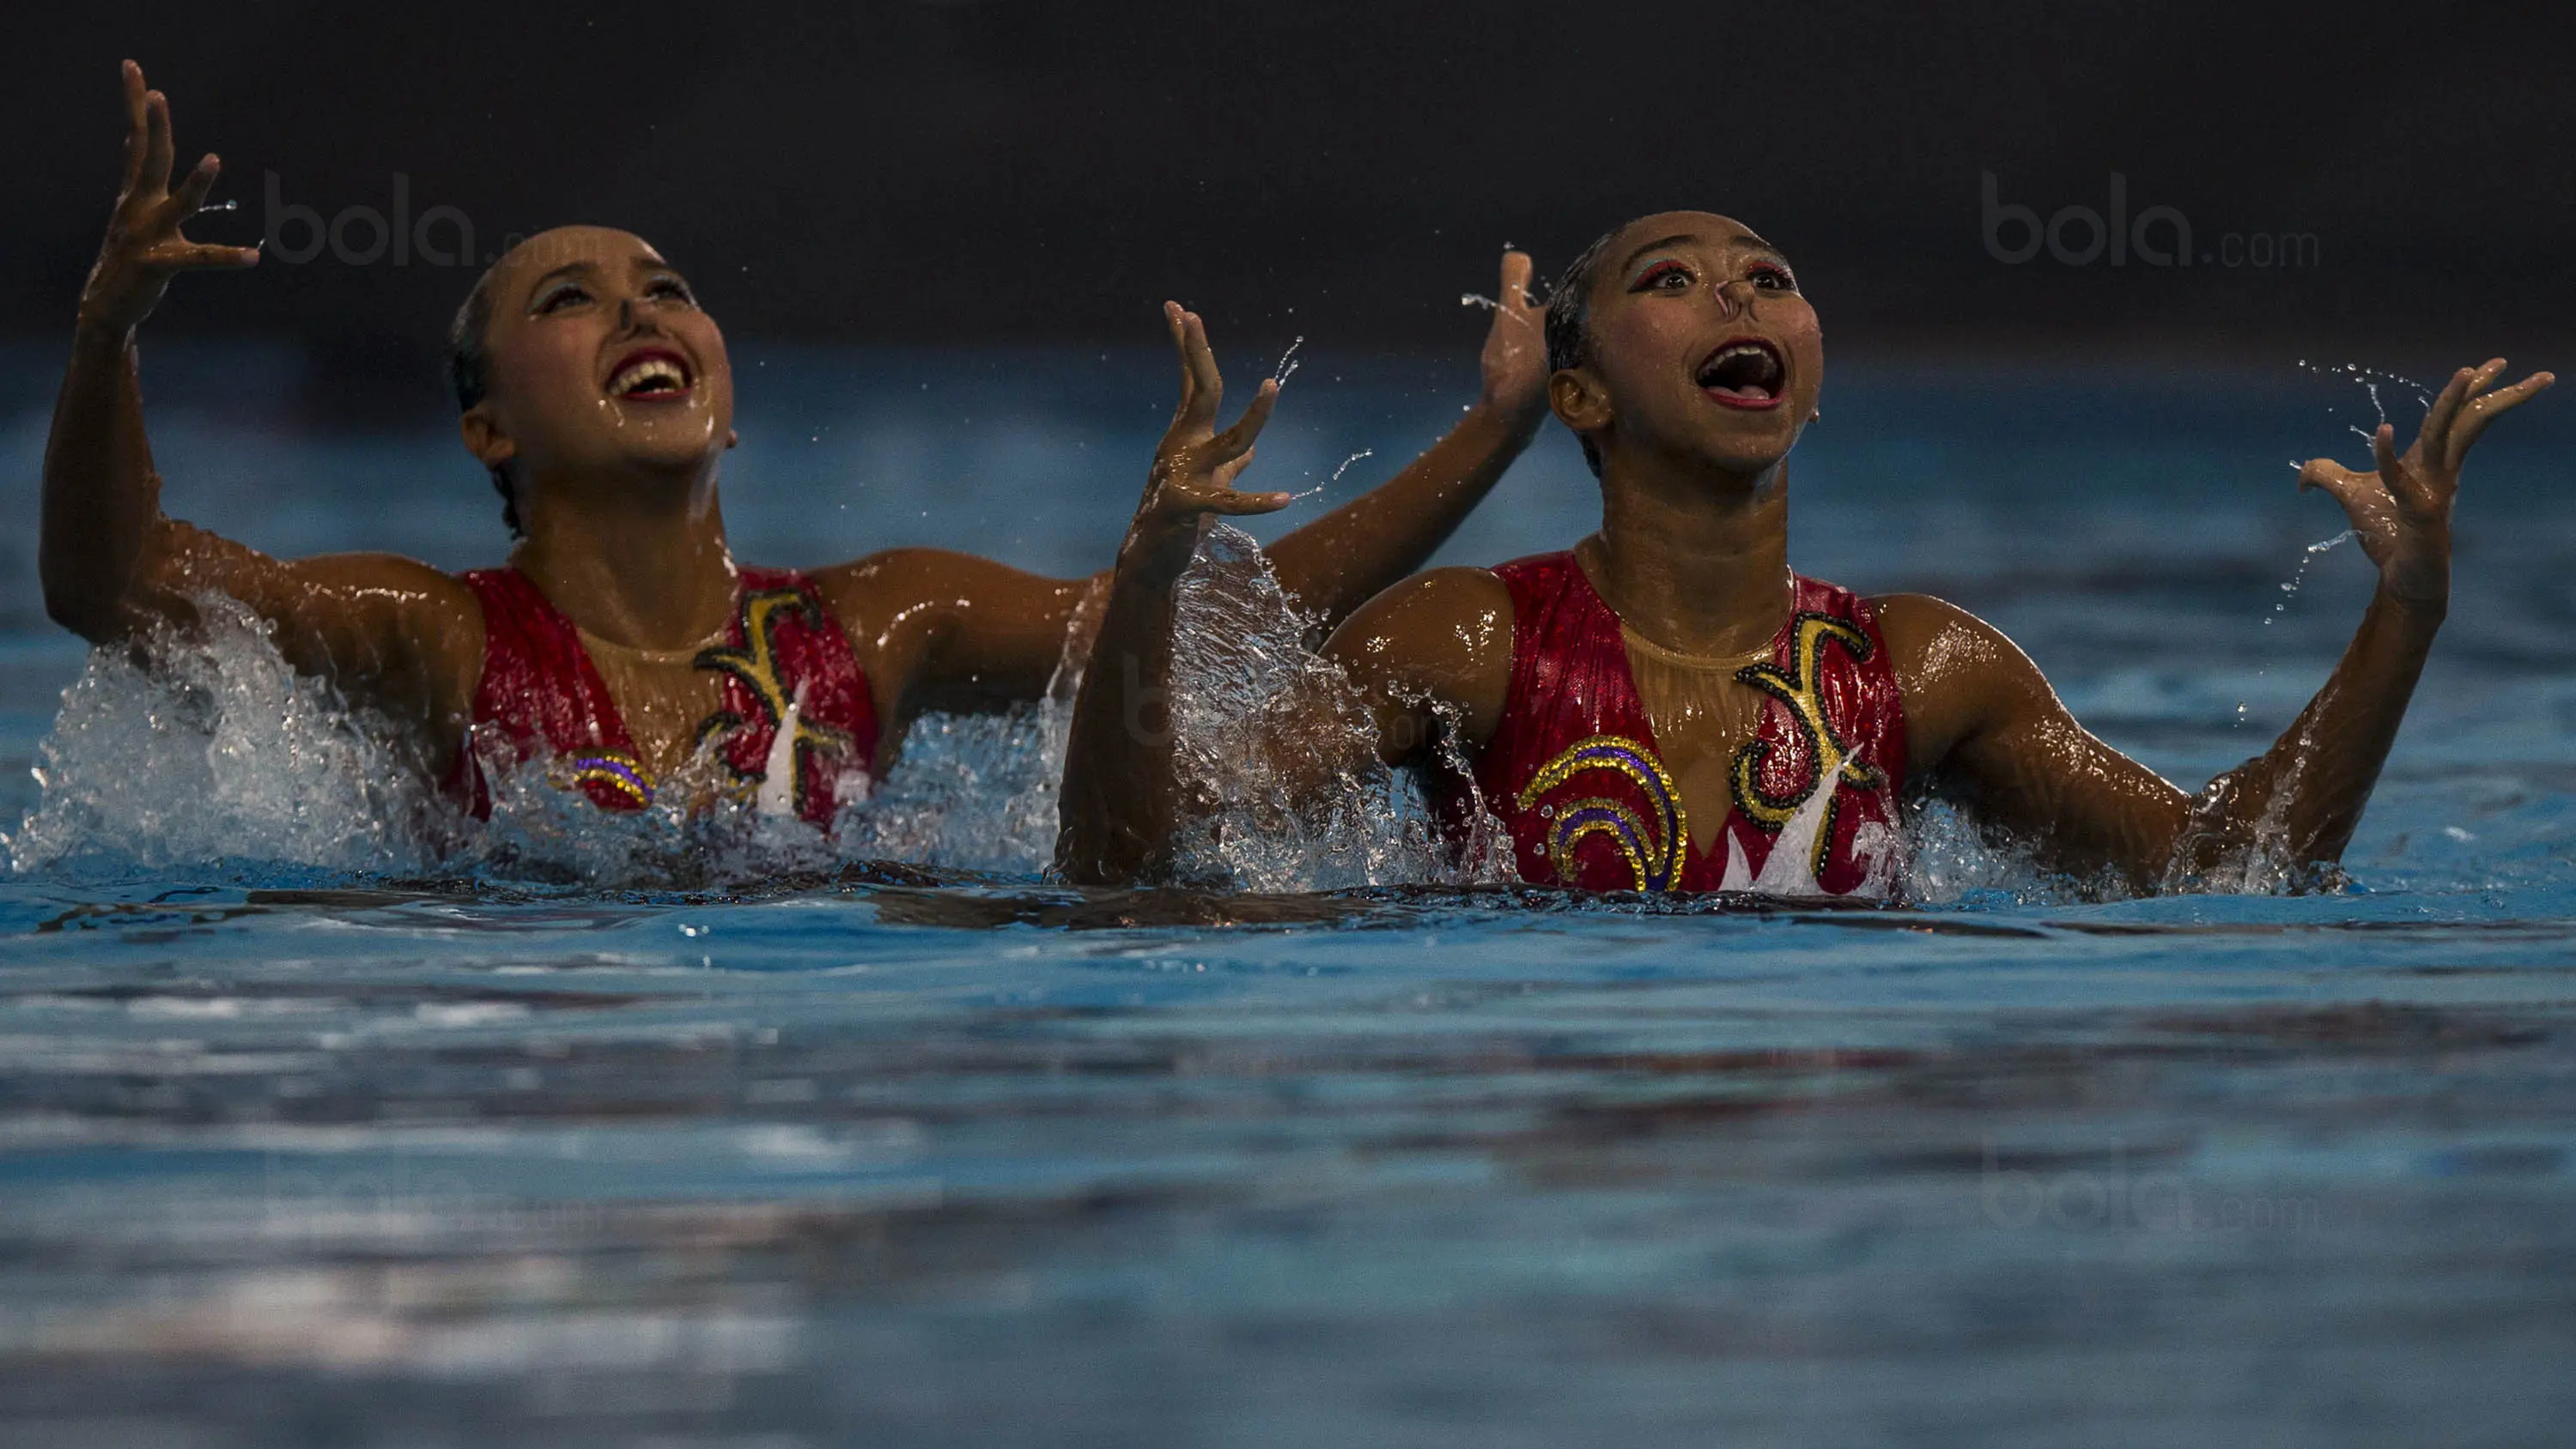 Pasangan perenang indah Indonesia, Anisa Feritrianti dan Claudia Megawati, saat tampil pada nomor duet technical routine cabang renang indah di Aquatic Center, Kuala Lumpur, Kamis (18/8/2017). Pasangan ini berhasil meraih medali perunggu. (Bola.com/Vitali